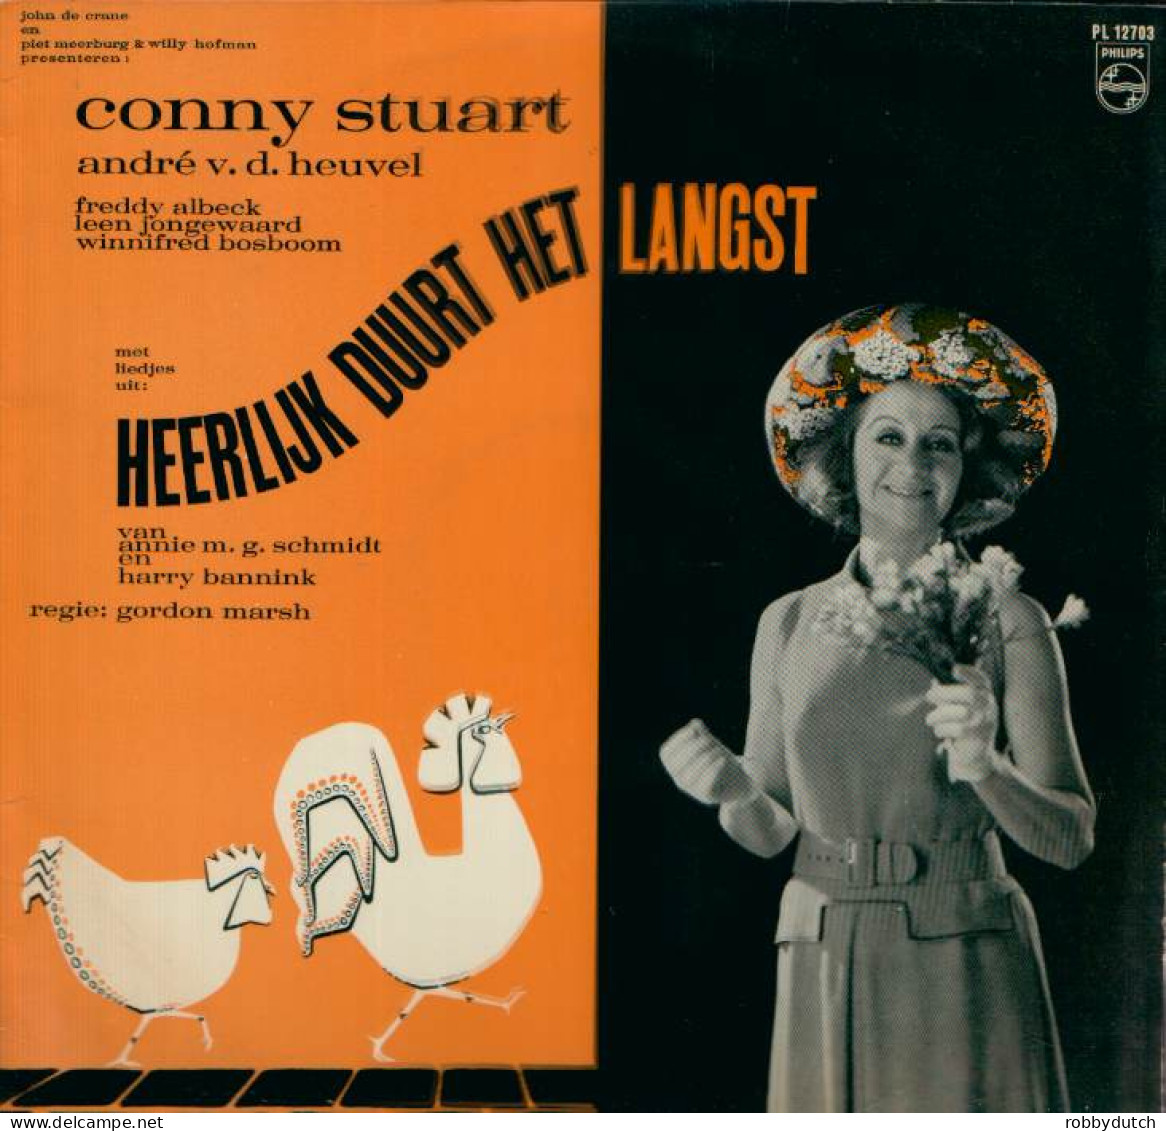 * LP *  HEERLIJK DUURT HET LANGST (Annie M.G. Schmidt En Harry Bannink) (Holland 1966) - Musicales